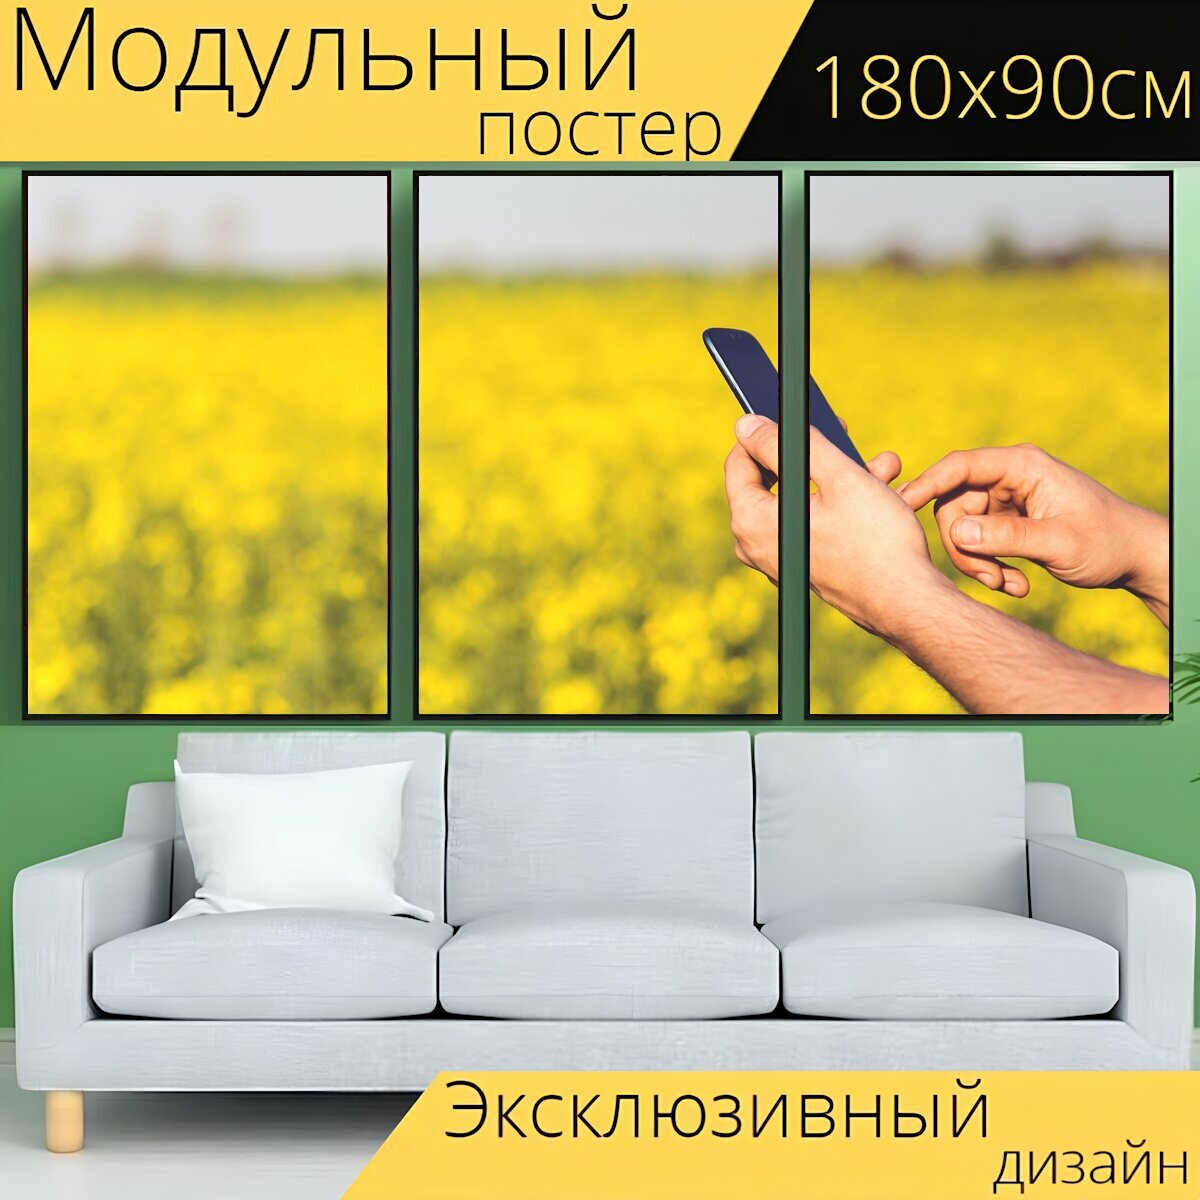 Модульный постер "Смартфон, мобильный, мобильный телефон" 180 x 90 см. для интерьера